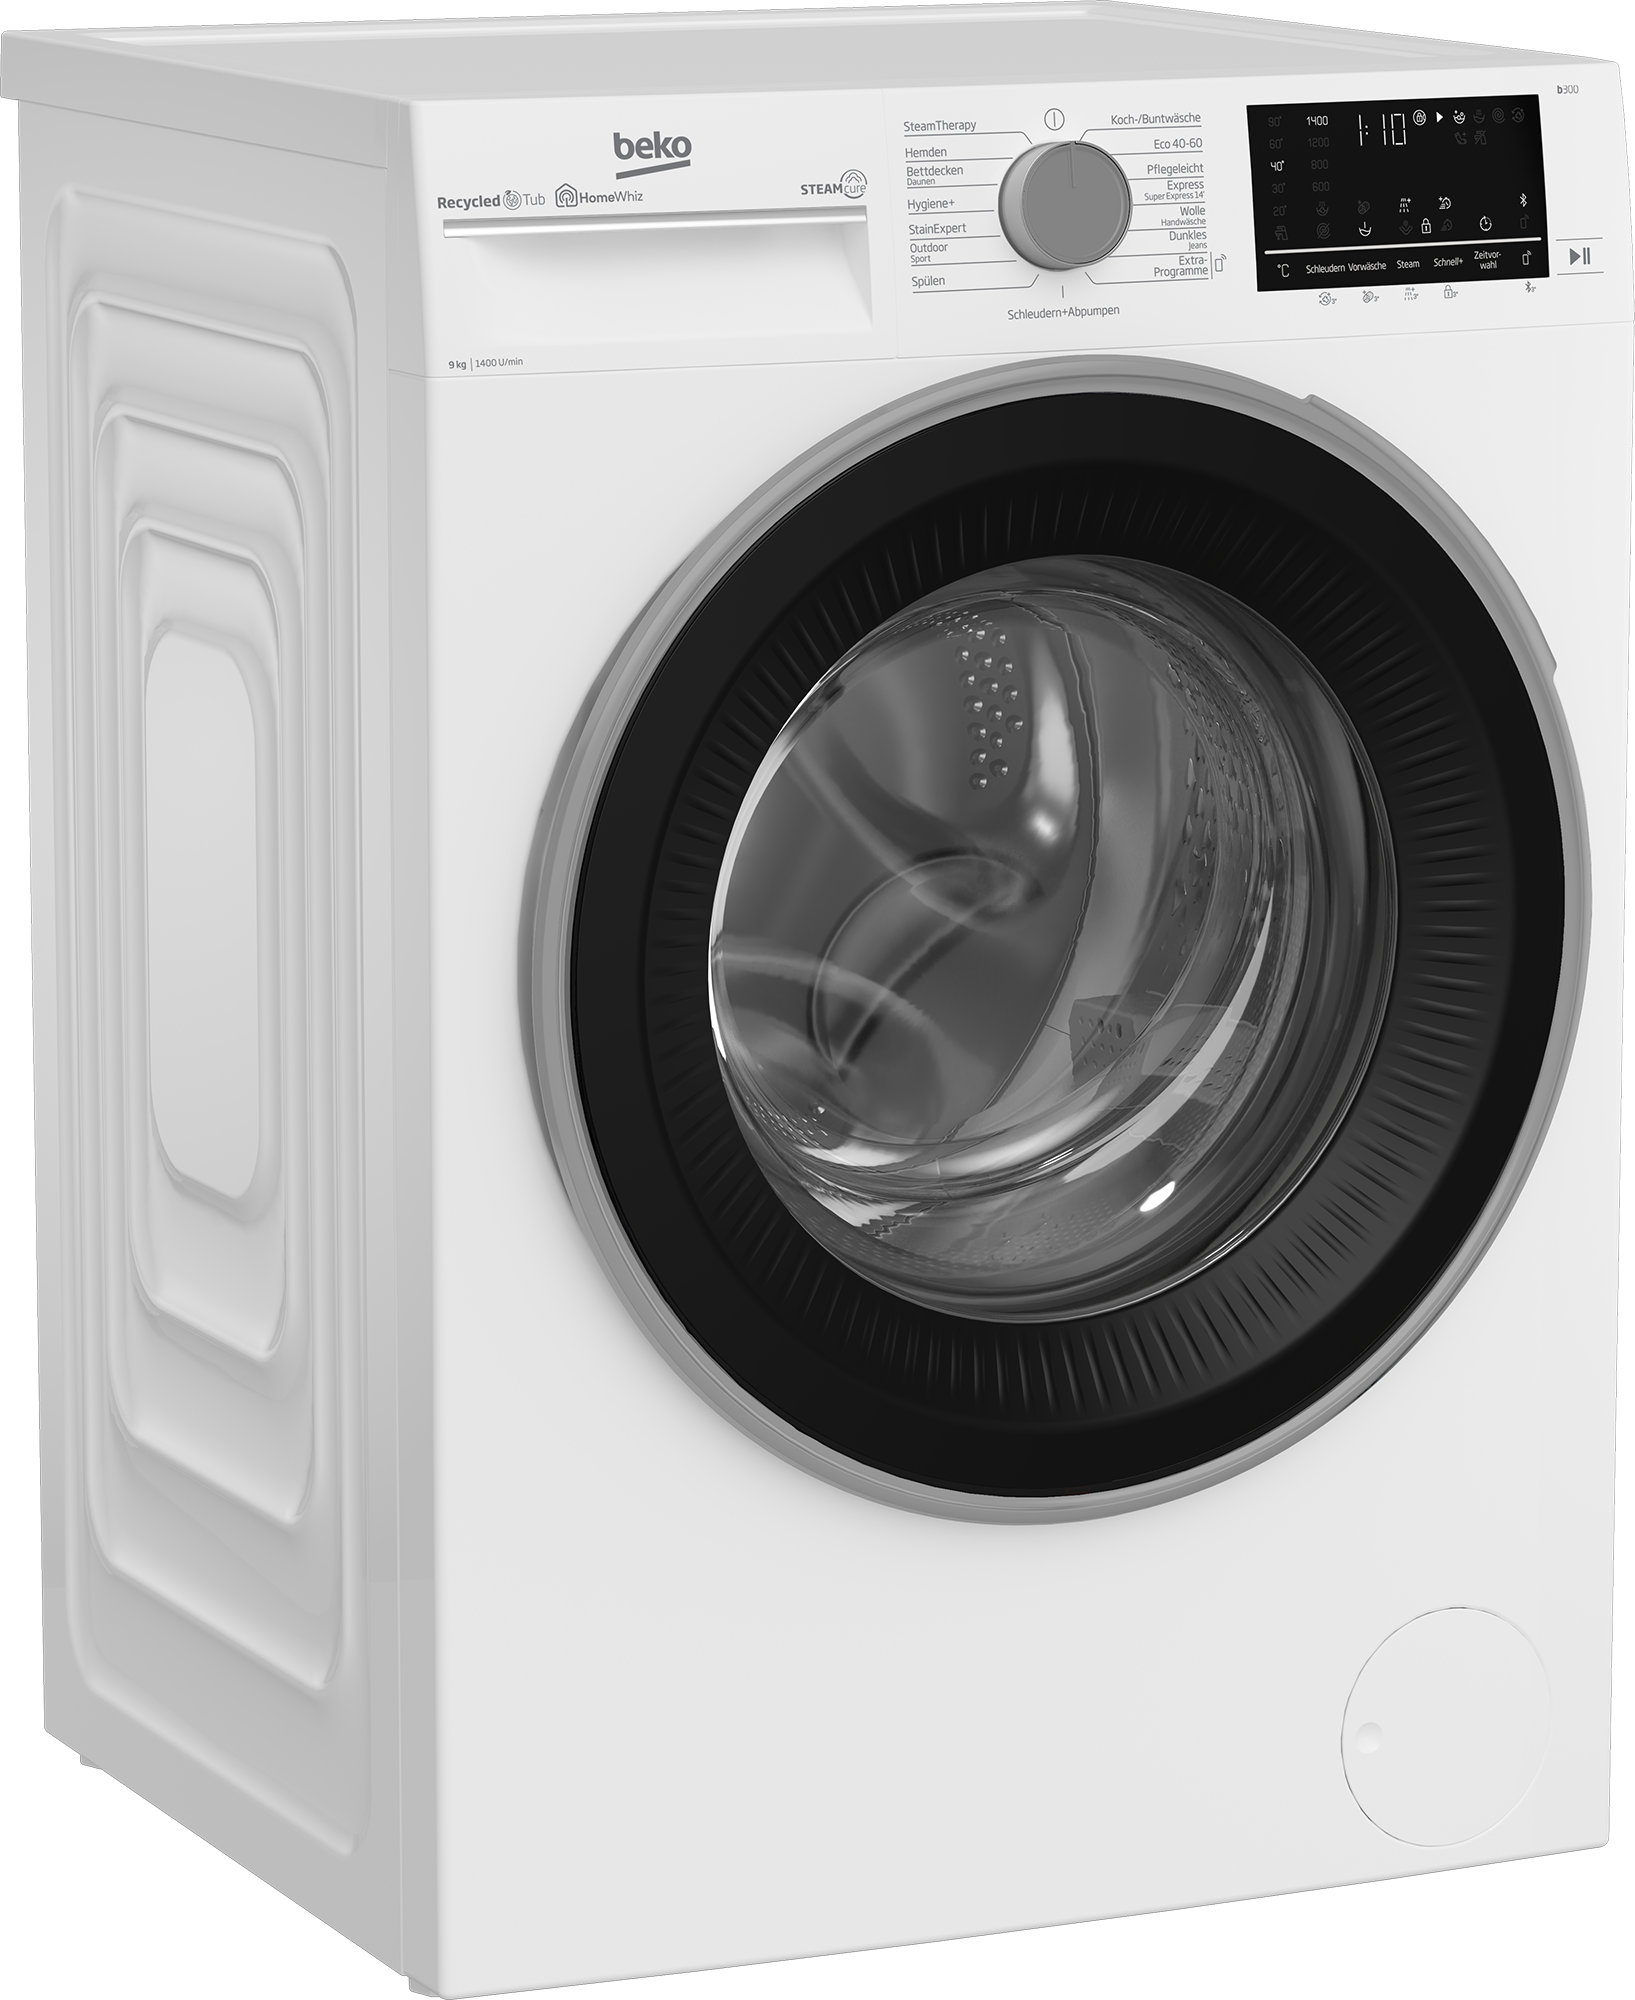 BEKO Waschmaschine, b300, B3WFU59415W2, 9 kg, 1400 U/min, SteamCure - 99%  allergenfrei mit 3 Jahren XXL Garantie